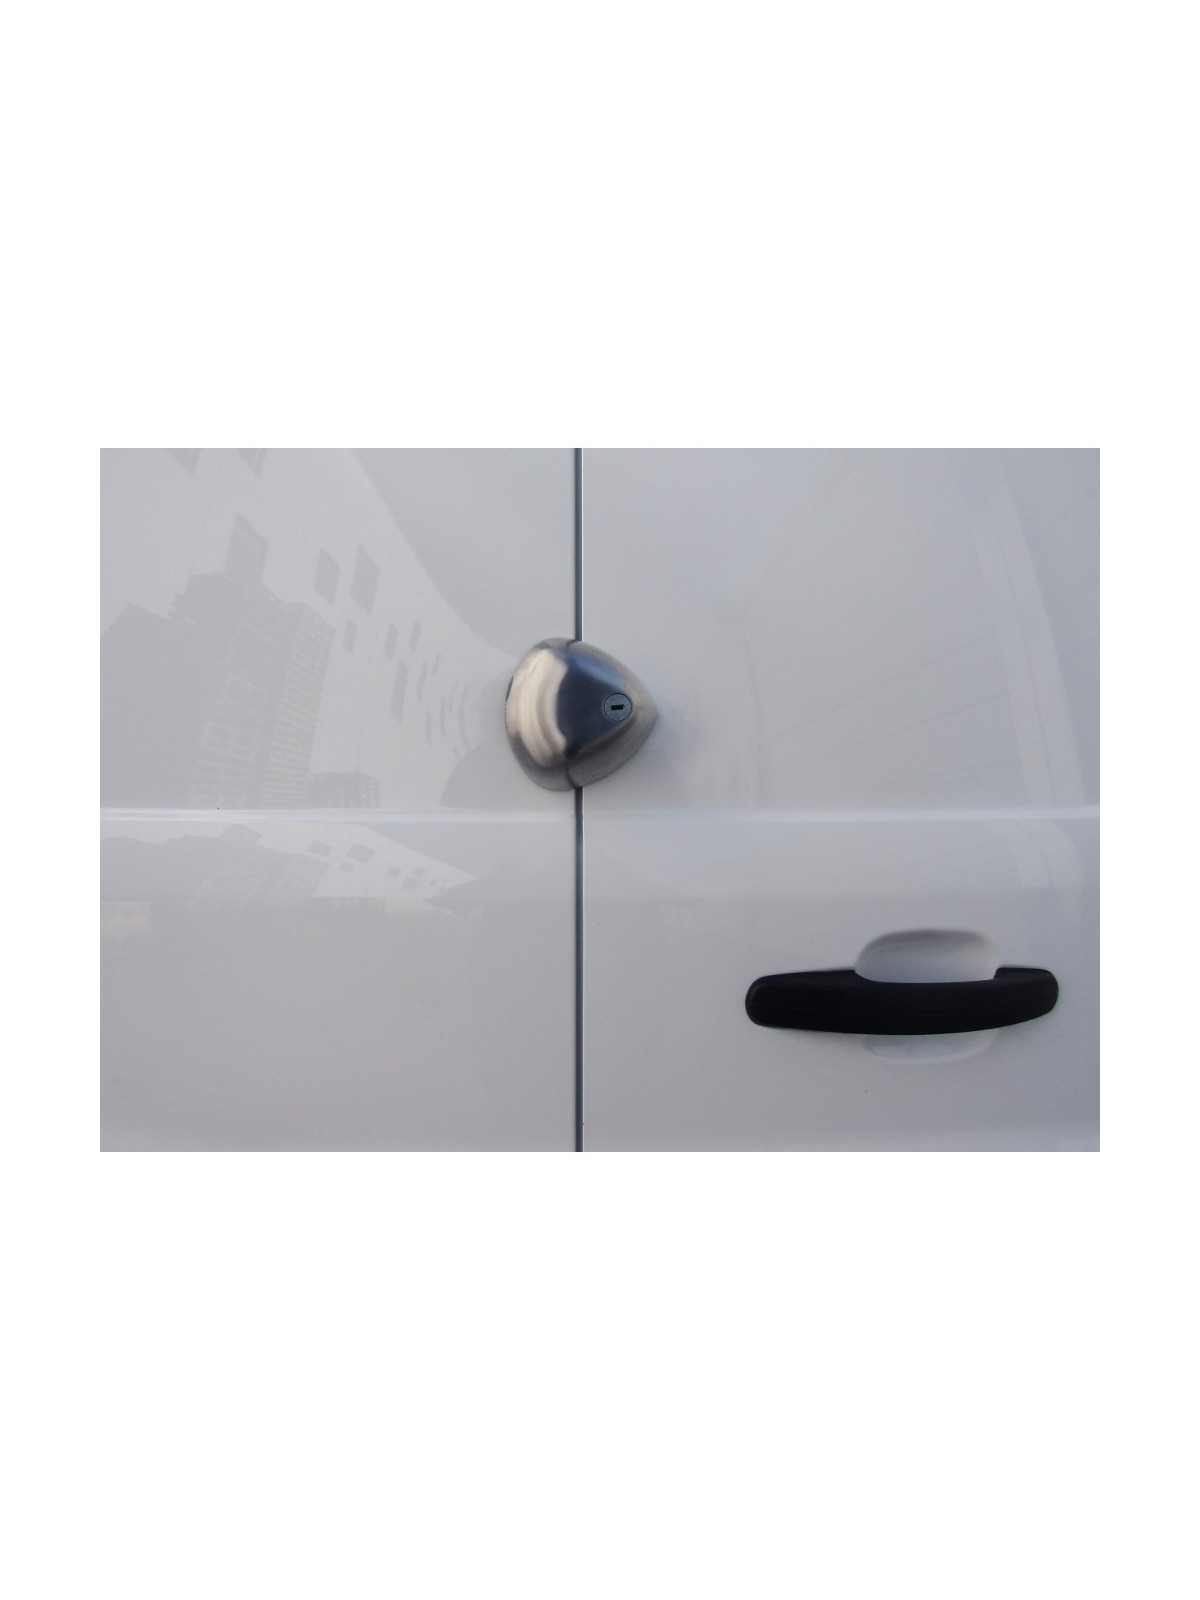 Serrure DAKEN Blackstone SLAM installation sur portes arrieres et latérale des camionnettes